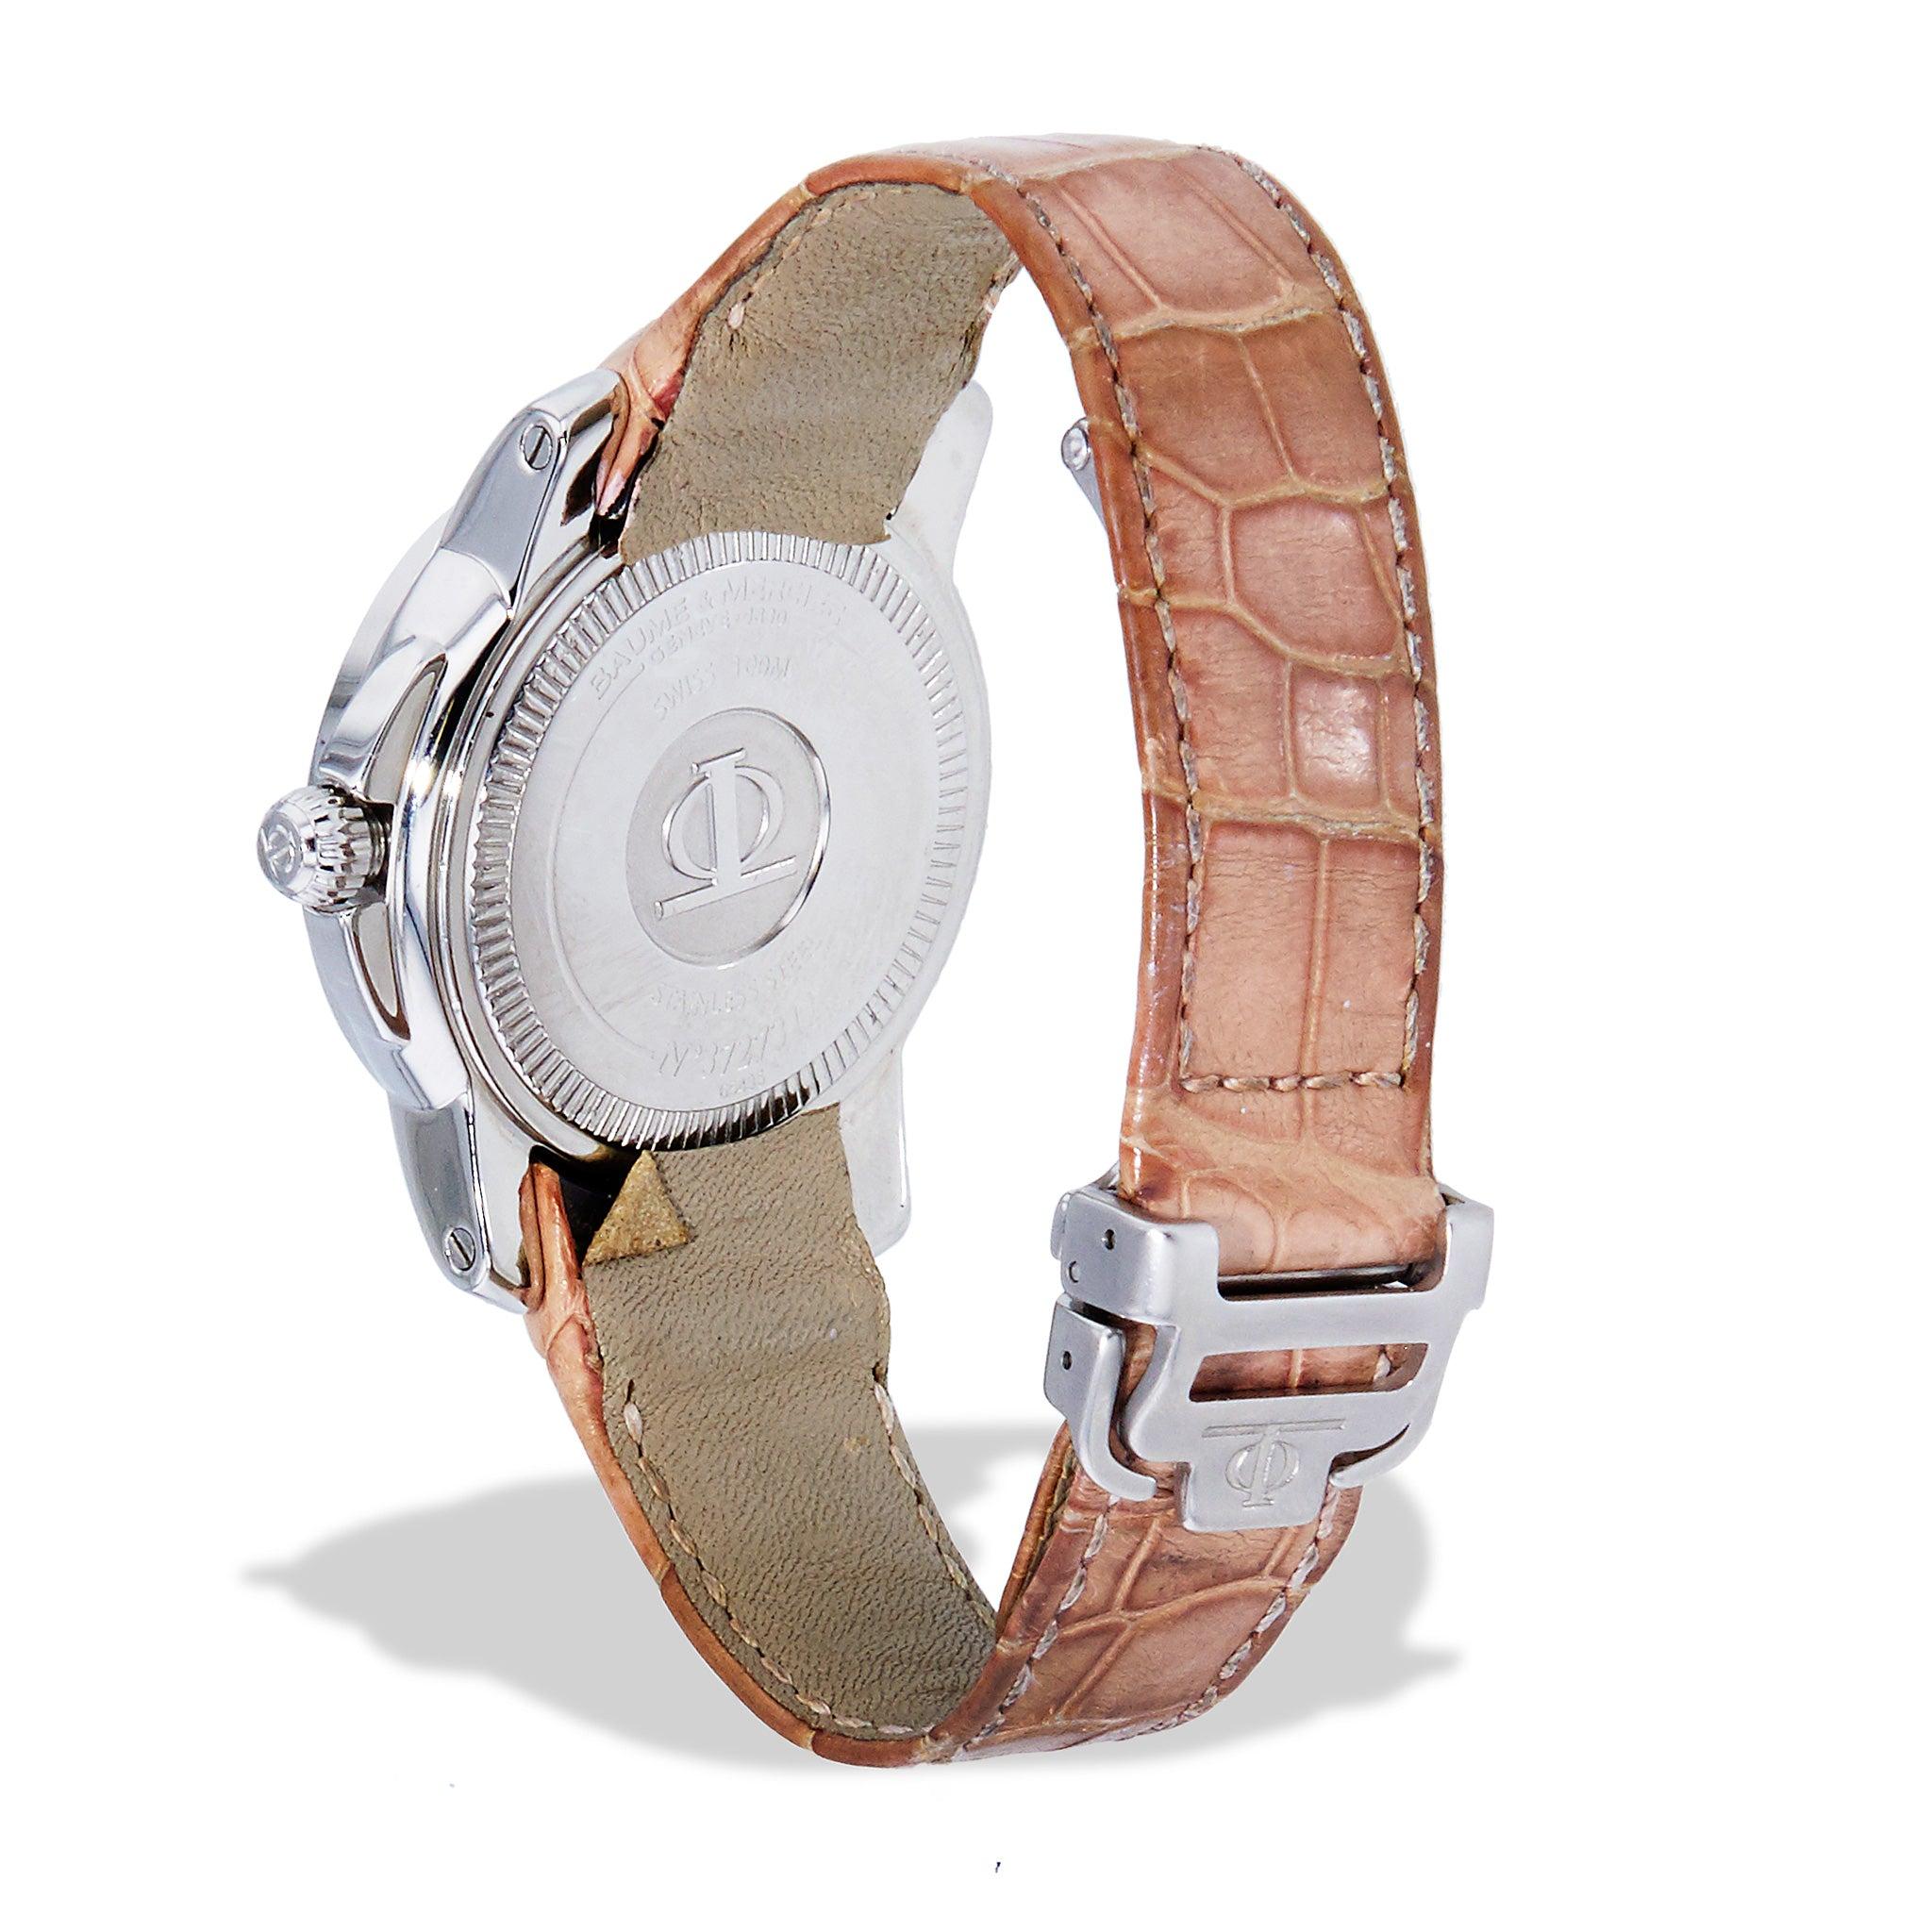 Cette montre iconique Capeland 65435 de Baume & Mercier est une combinaison parfaite d'élégance intemporelle et de luxe moderne. Le garde-temps de la Collection Sal est doté d'une remarquable lunette en nacre et diamants, d'un bracelet en cuir